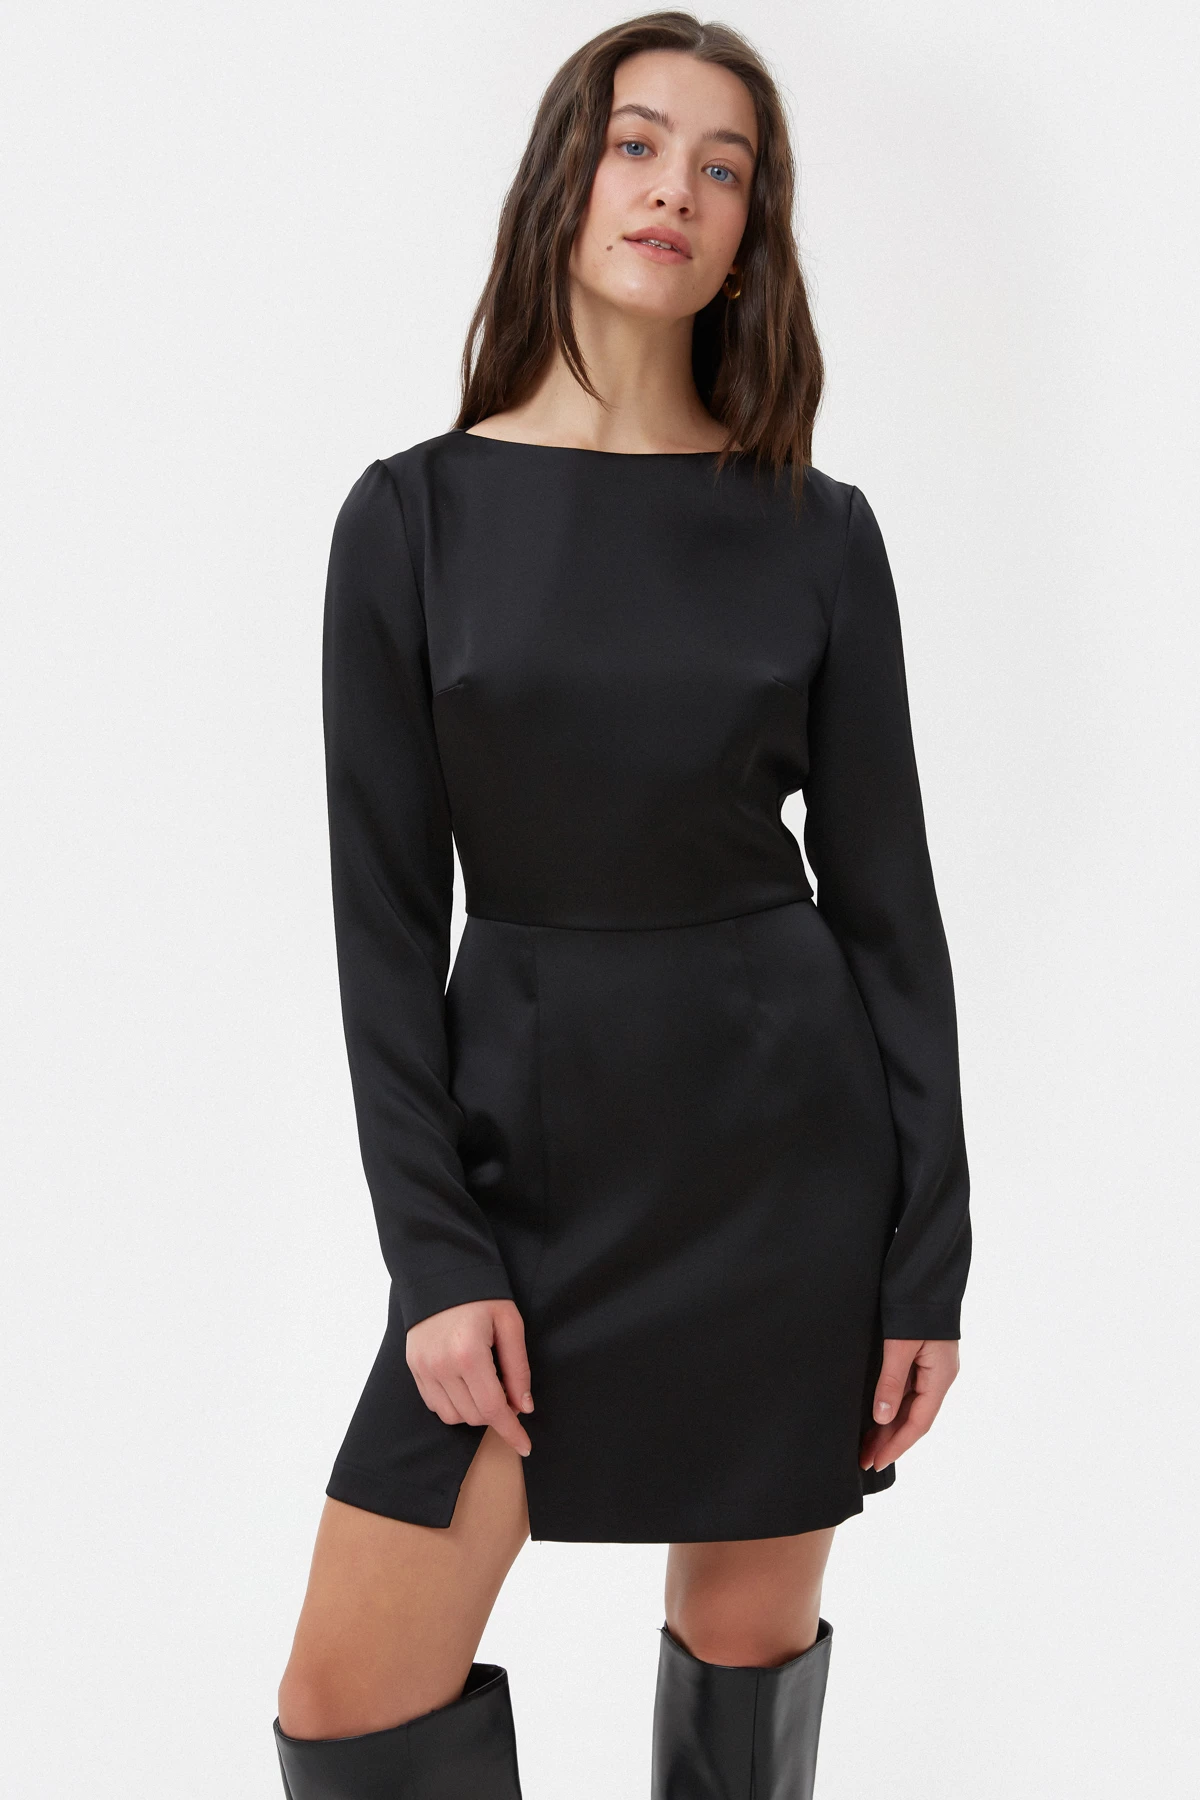 Коротка чорна сукня з довгим рукавом з сатину, фото 1